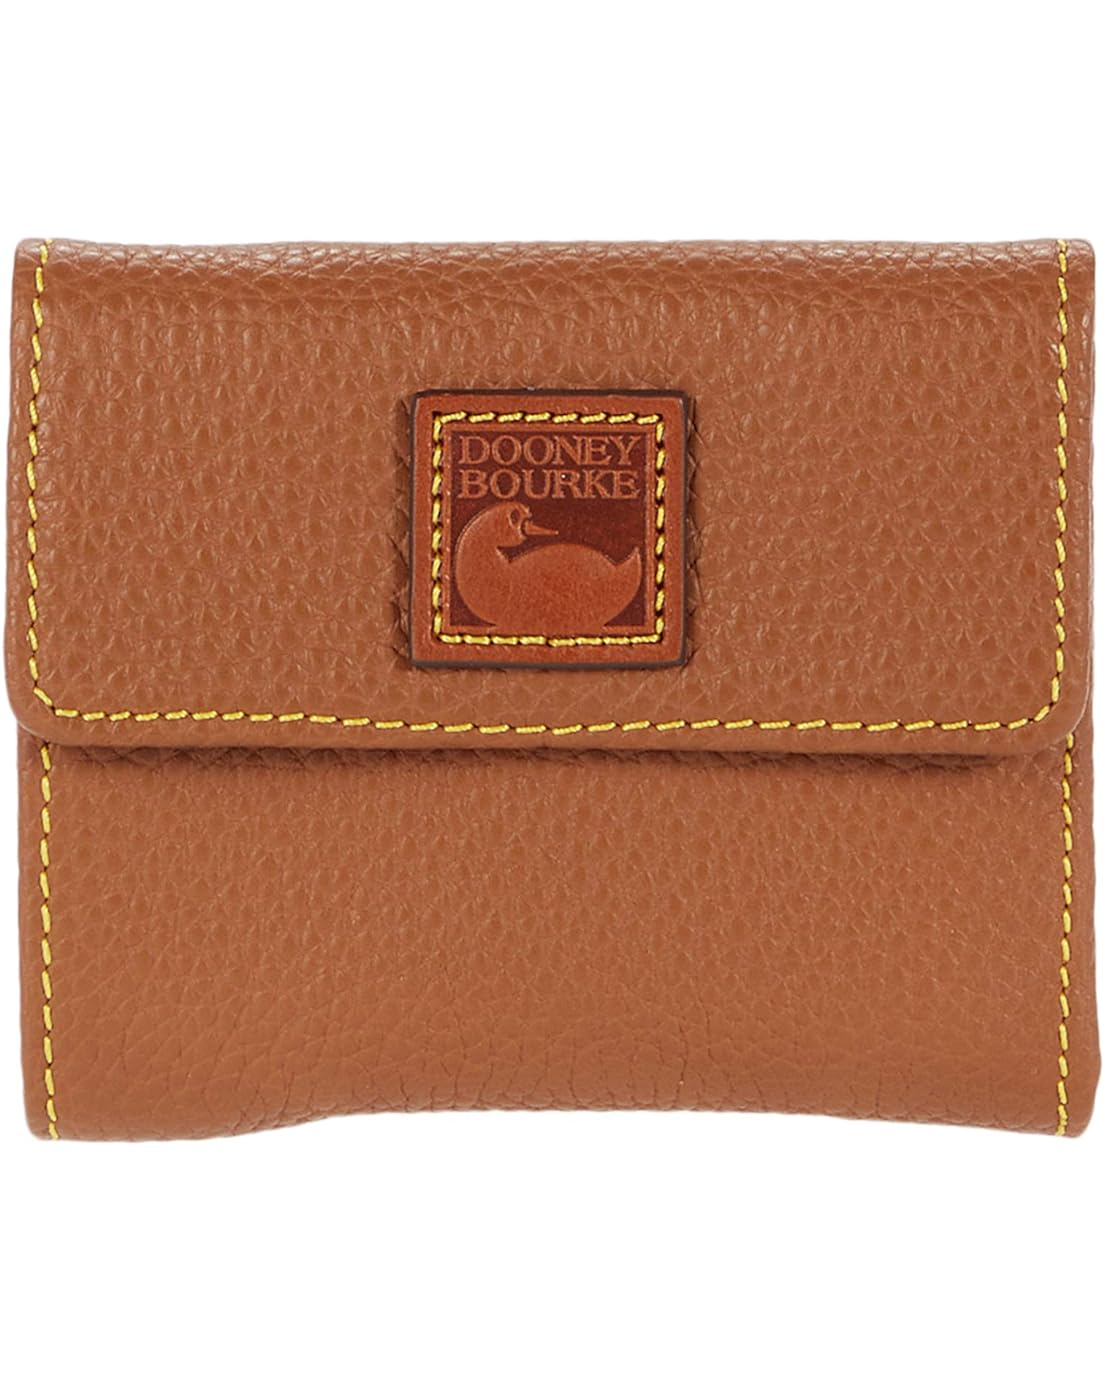 Dooney & Bourke Pebble Small Flap Wallet